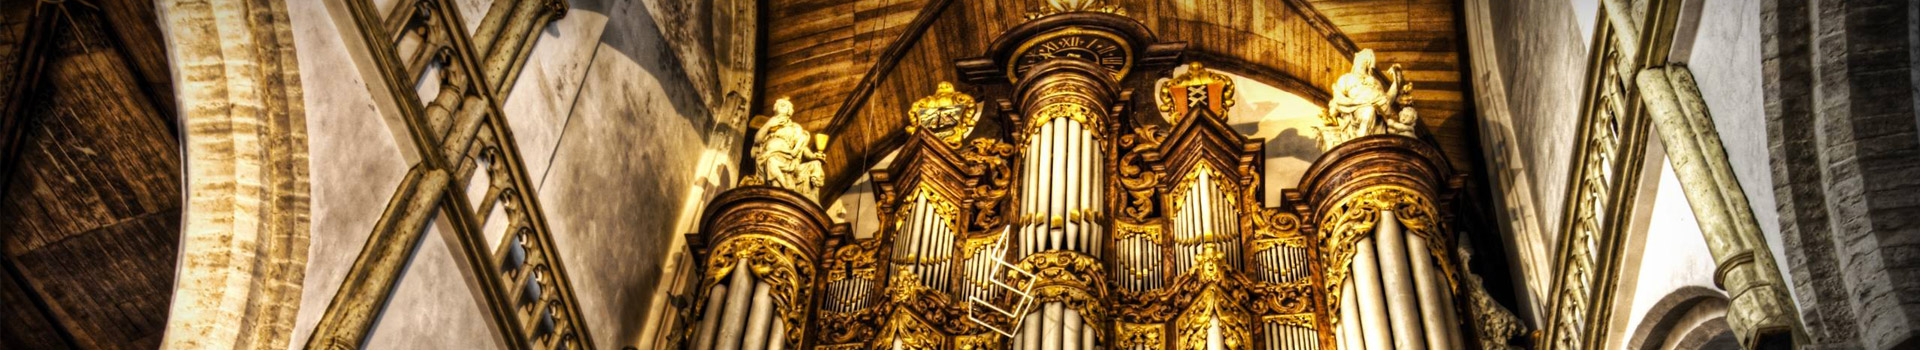 Grand Organ Gala tickets at the Royal Albert Hall